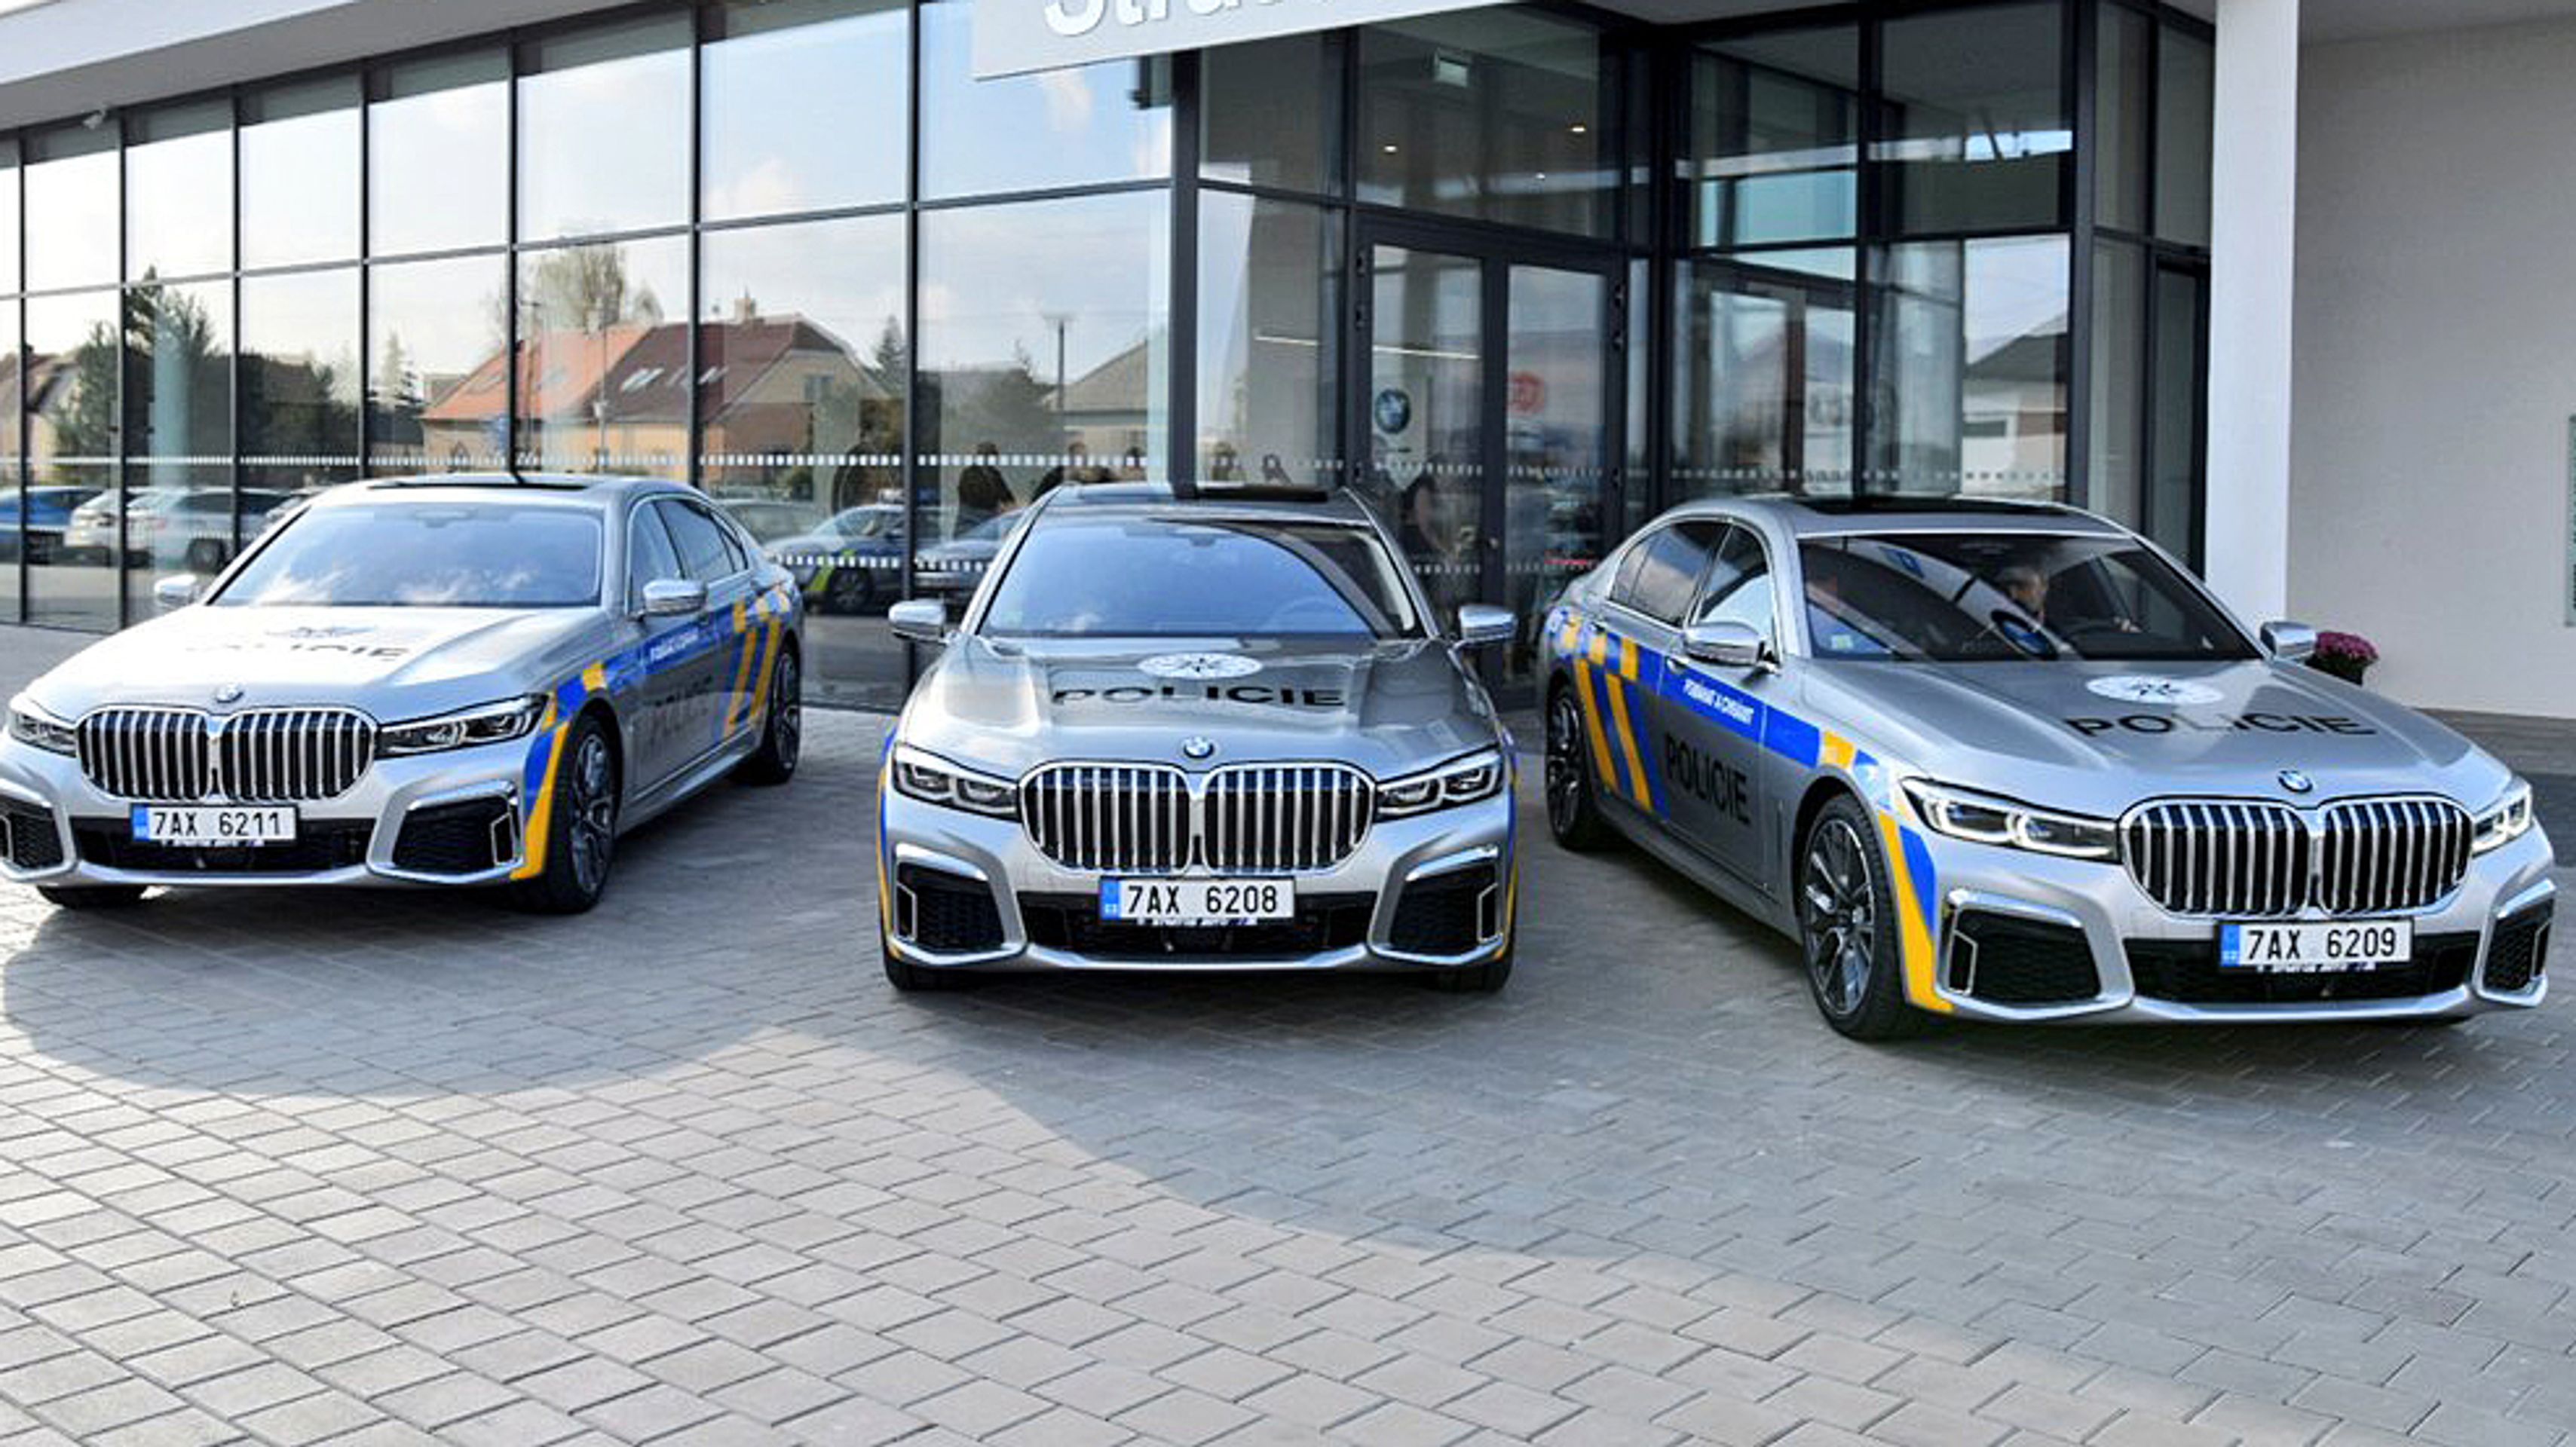 Policejní BMW 745 Le - Fotogalerie: Policie si půjčila luxusní BMW 745 Le (4/4)